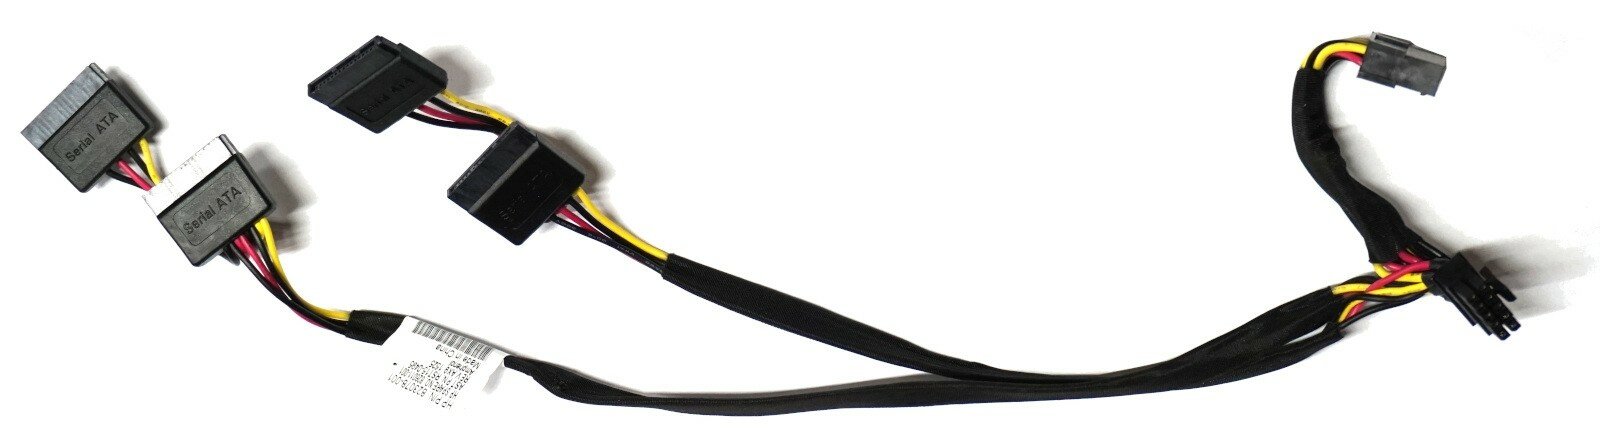 Кабель HPE для сервера DL360 с 10-контактным разъемом SATA Power Cable, модель 823078-001